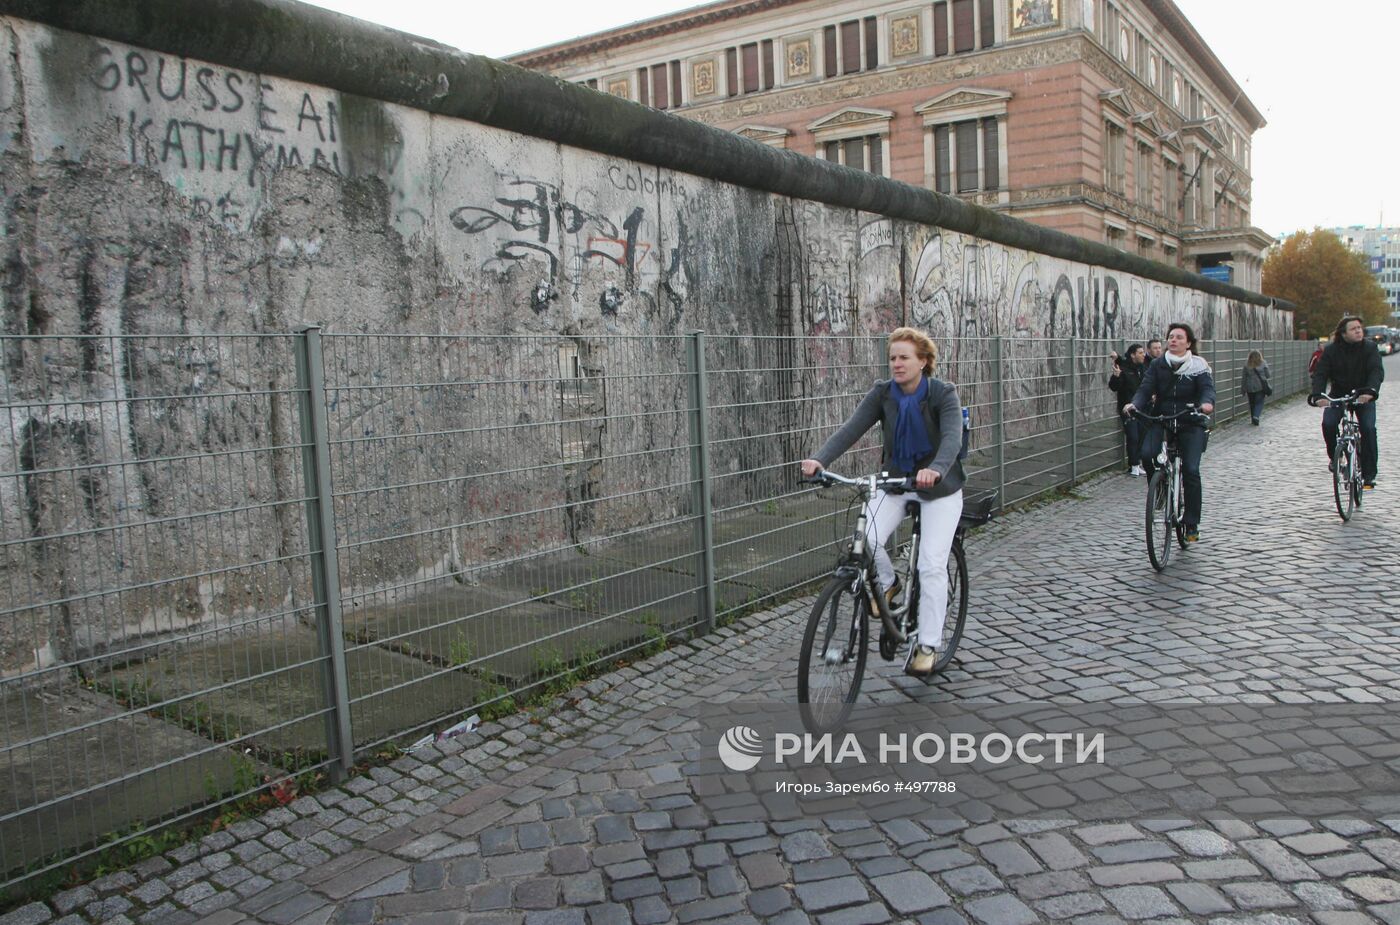 Сохранившаяся часть Берлинской стены